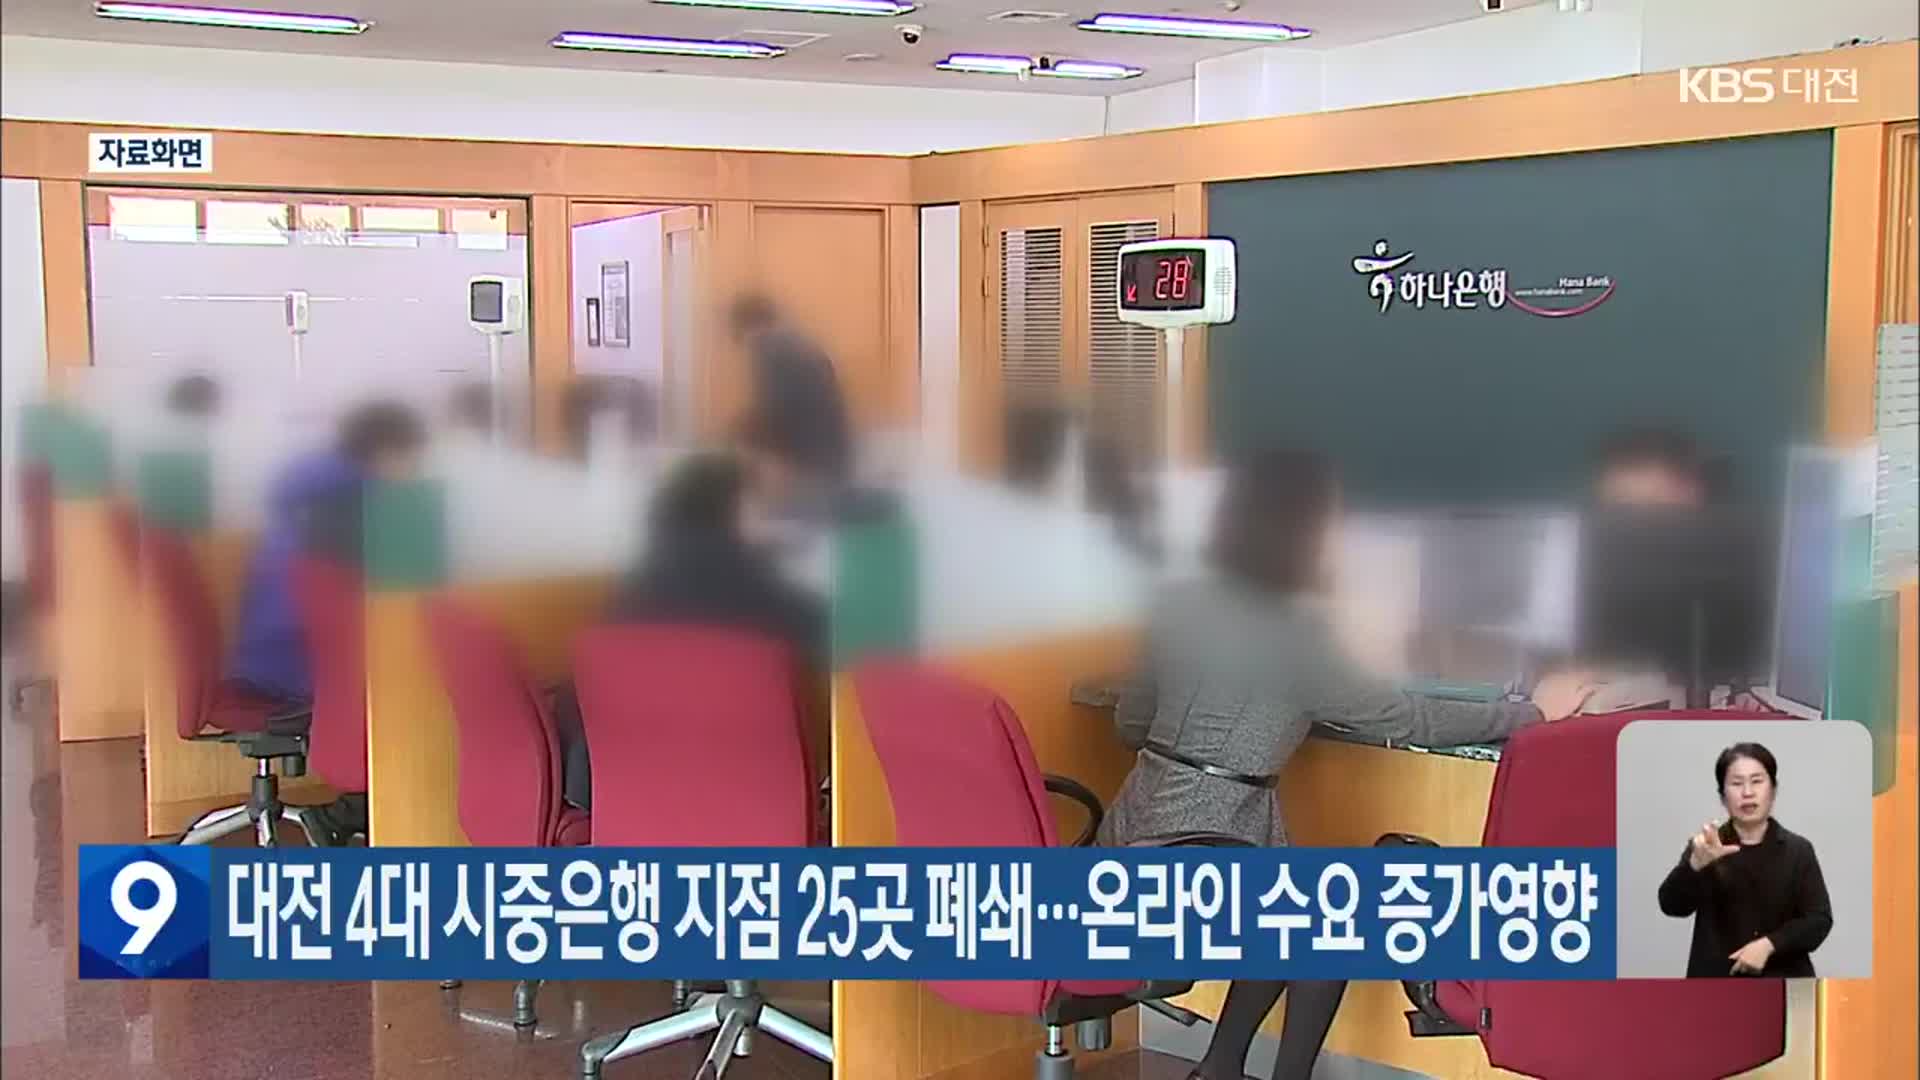 대전 4대 시중은행 지점 25곳 폐쇄…온라인 수요 증가영향